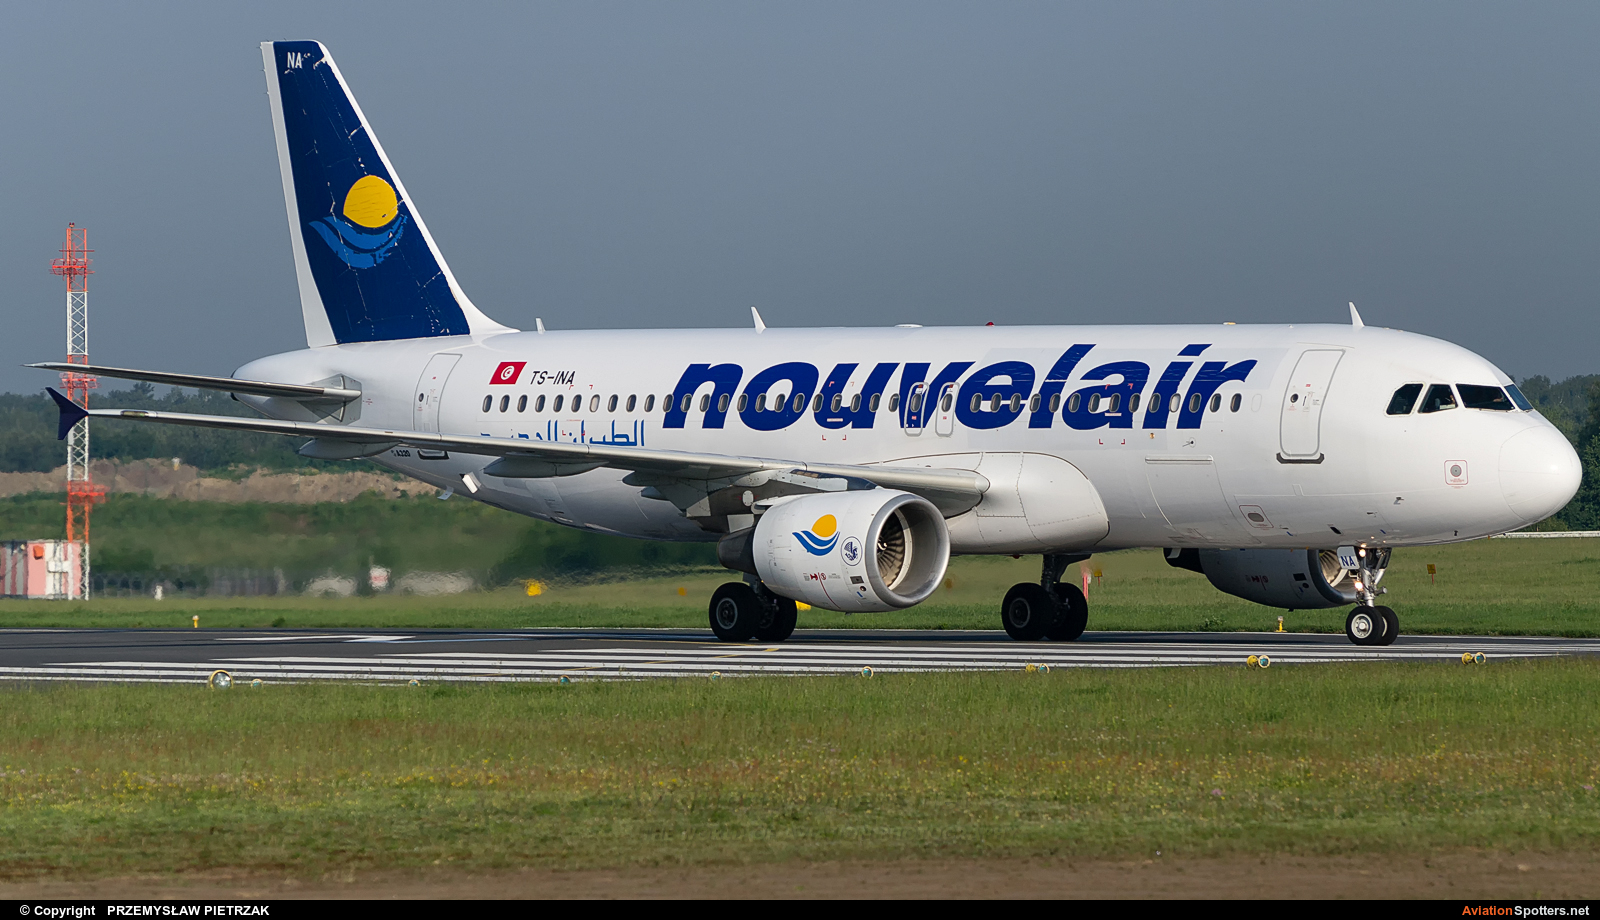 Nouvelair  -  A320  (TS-INA) By PRZEMYSŁAW PIETRZAK (PEPE74)